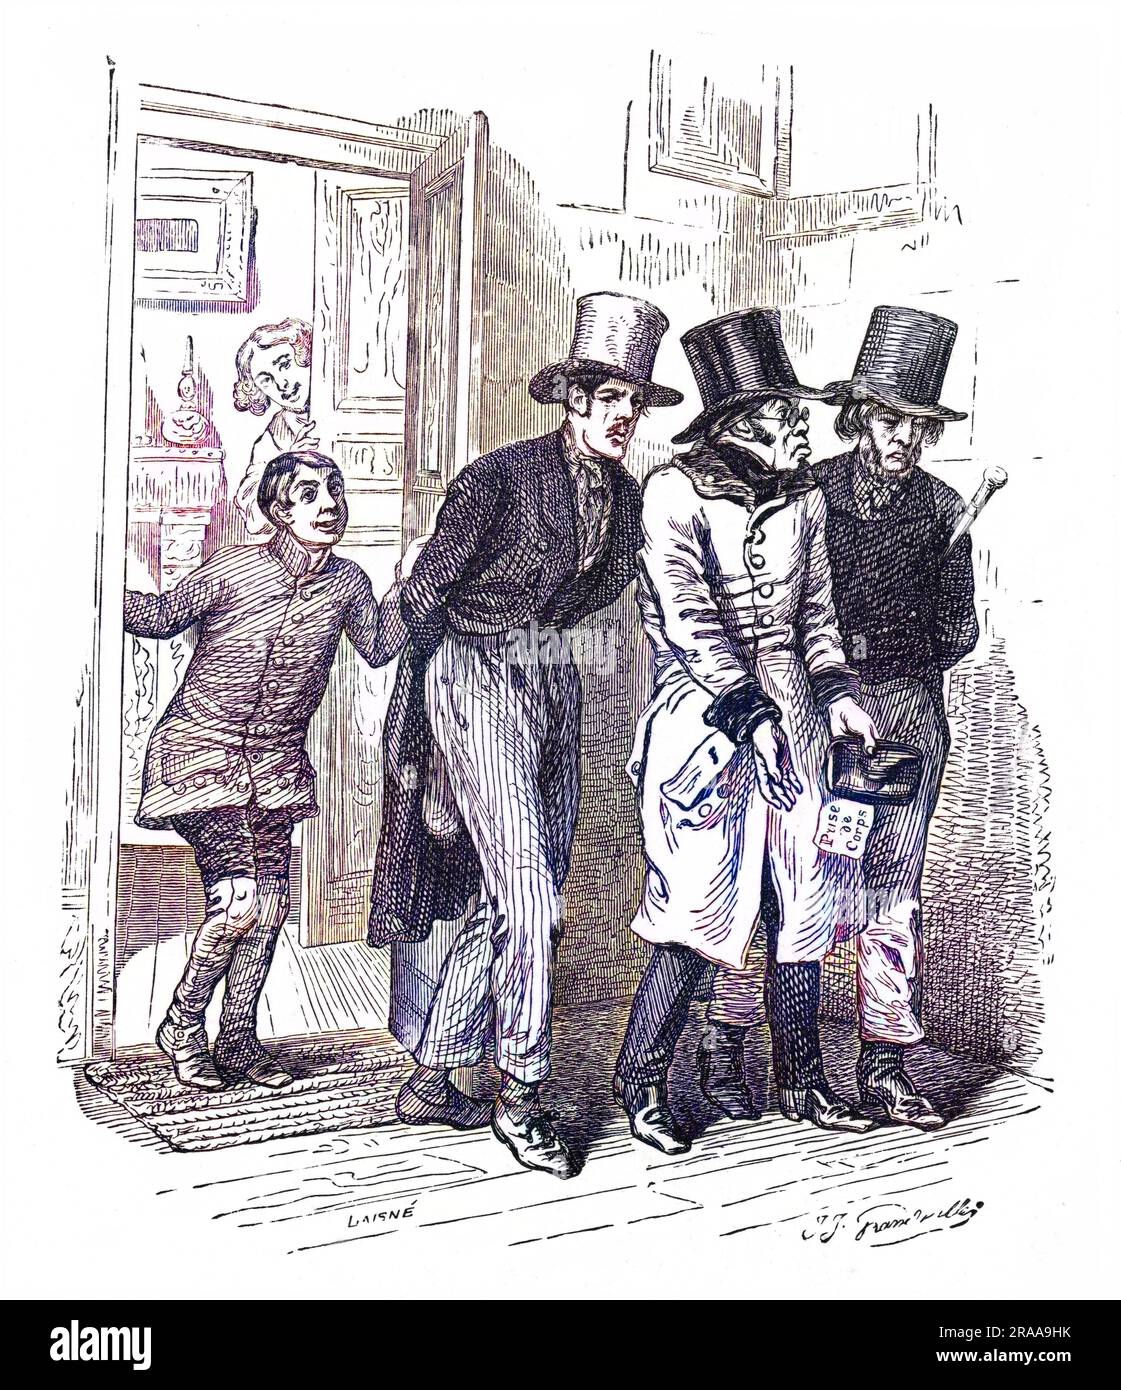 Zwei Männer verhaften einen Gentleman, weil er Schulden hat, und sein Sohn und seine Frau beobachten hilflos. Datum: 1843 Stockfoto